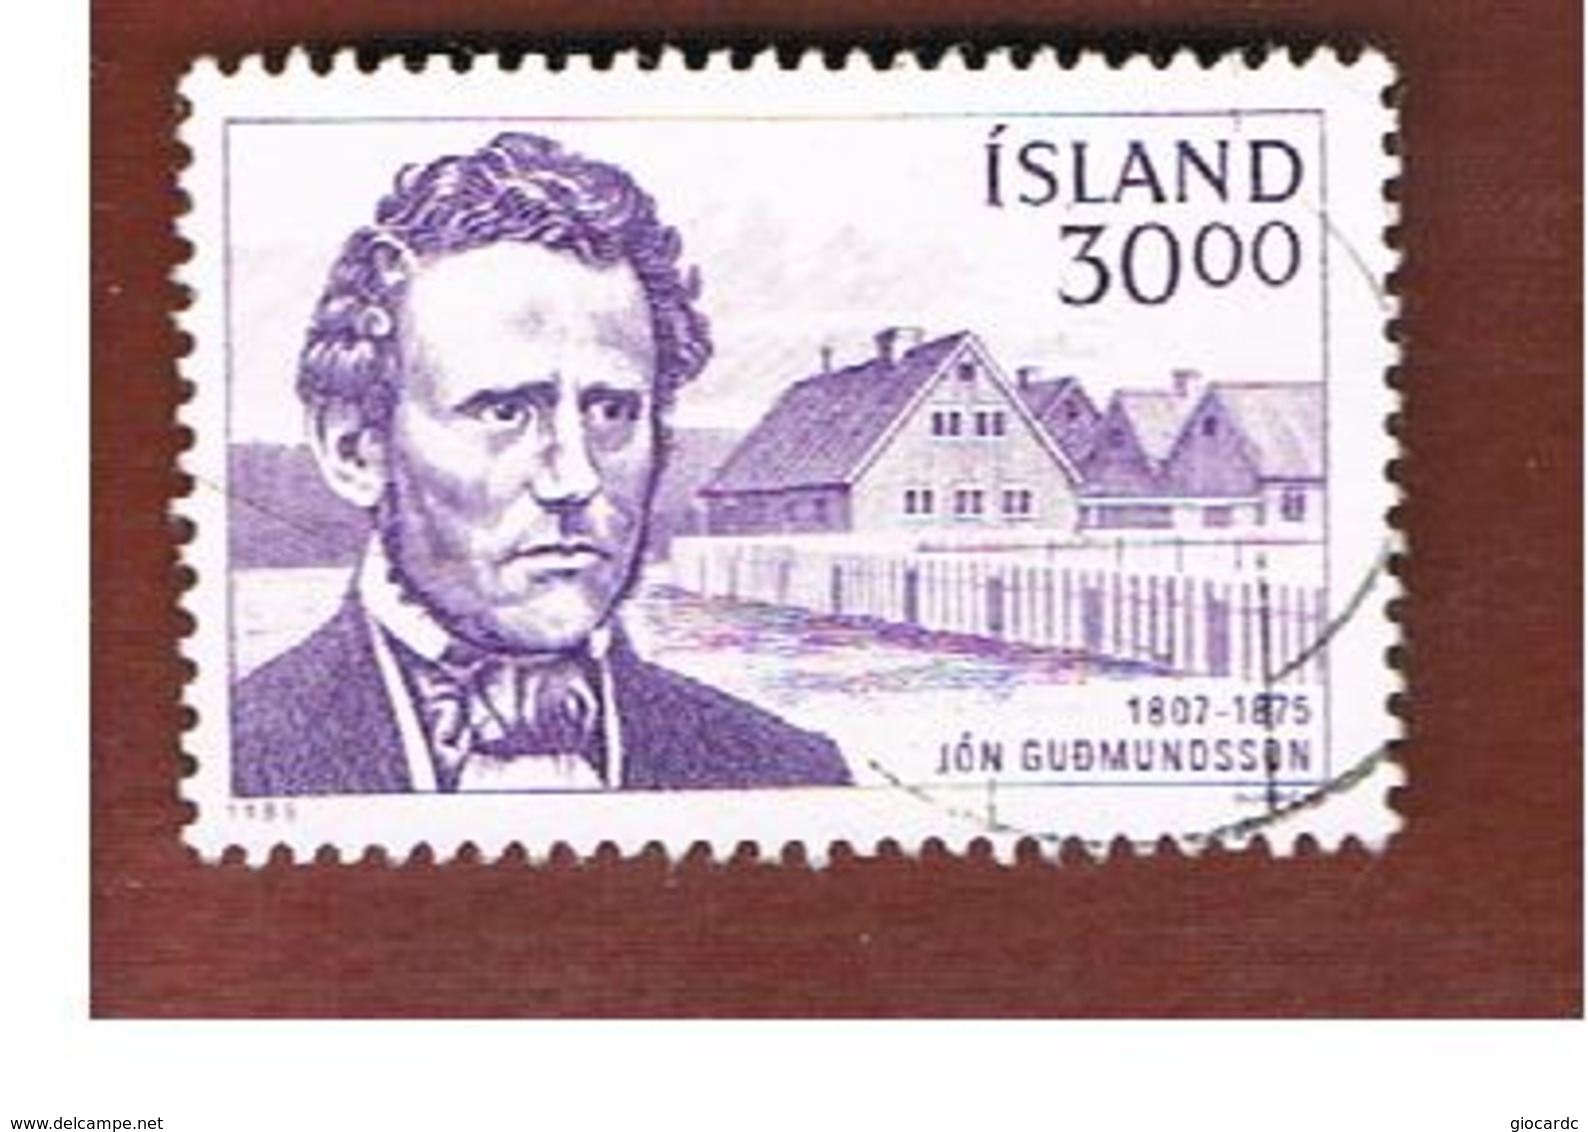 ISLANDA (ICELAND)  -  SG 669 - 1985 FAMOUS ICELANDER       -   USED - Usati